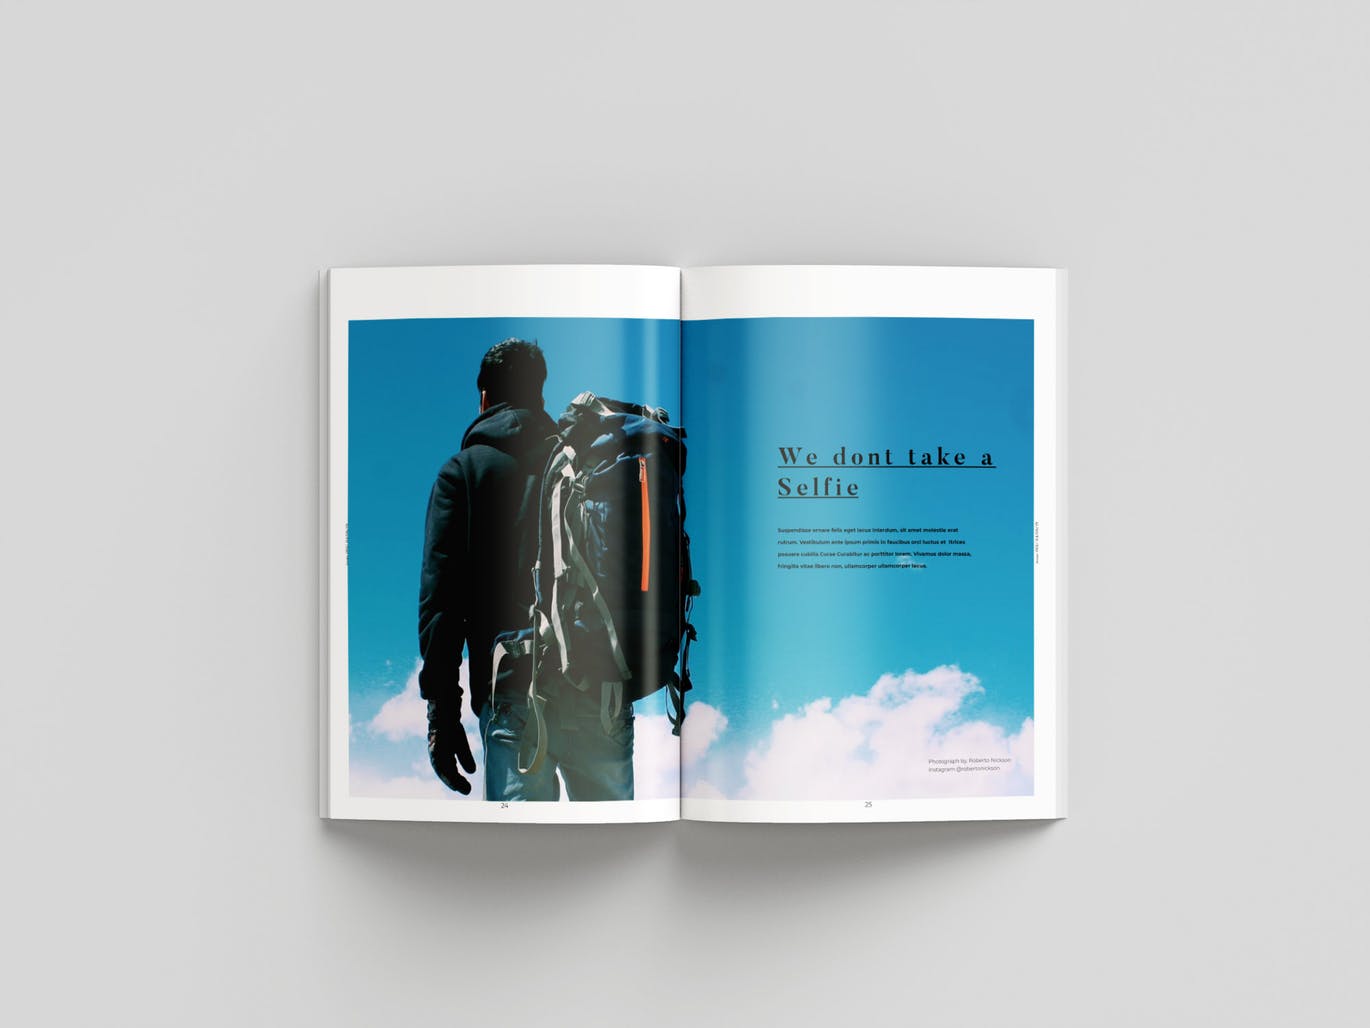 旅行/摄影/品牌主题杂志设计INDD模板 Magazine插图13